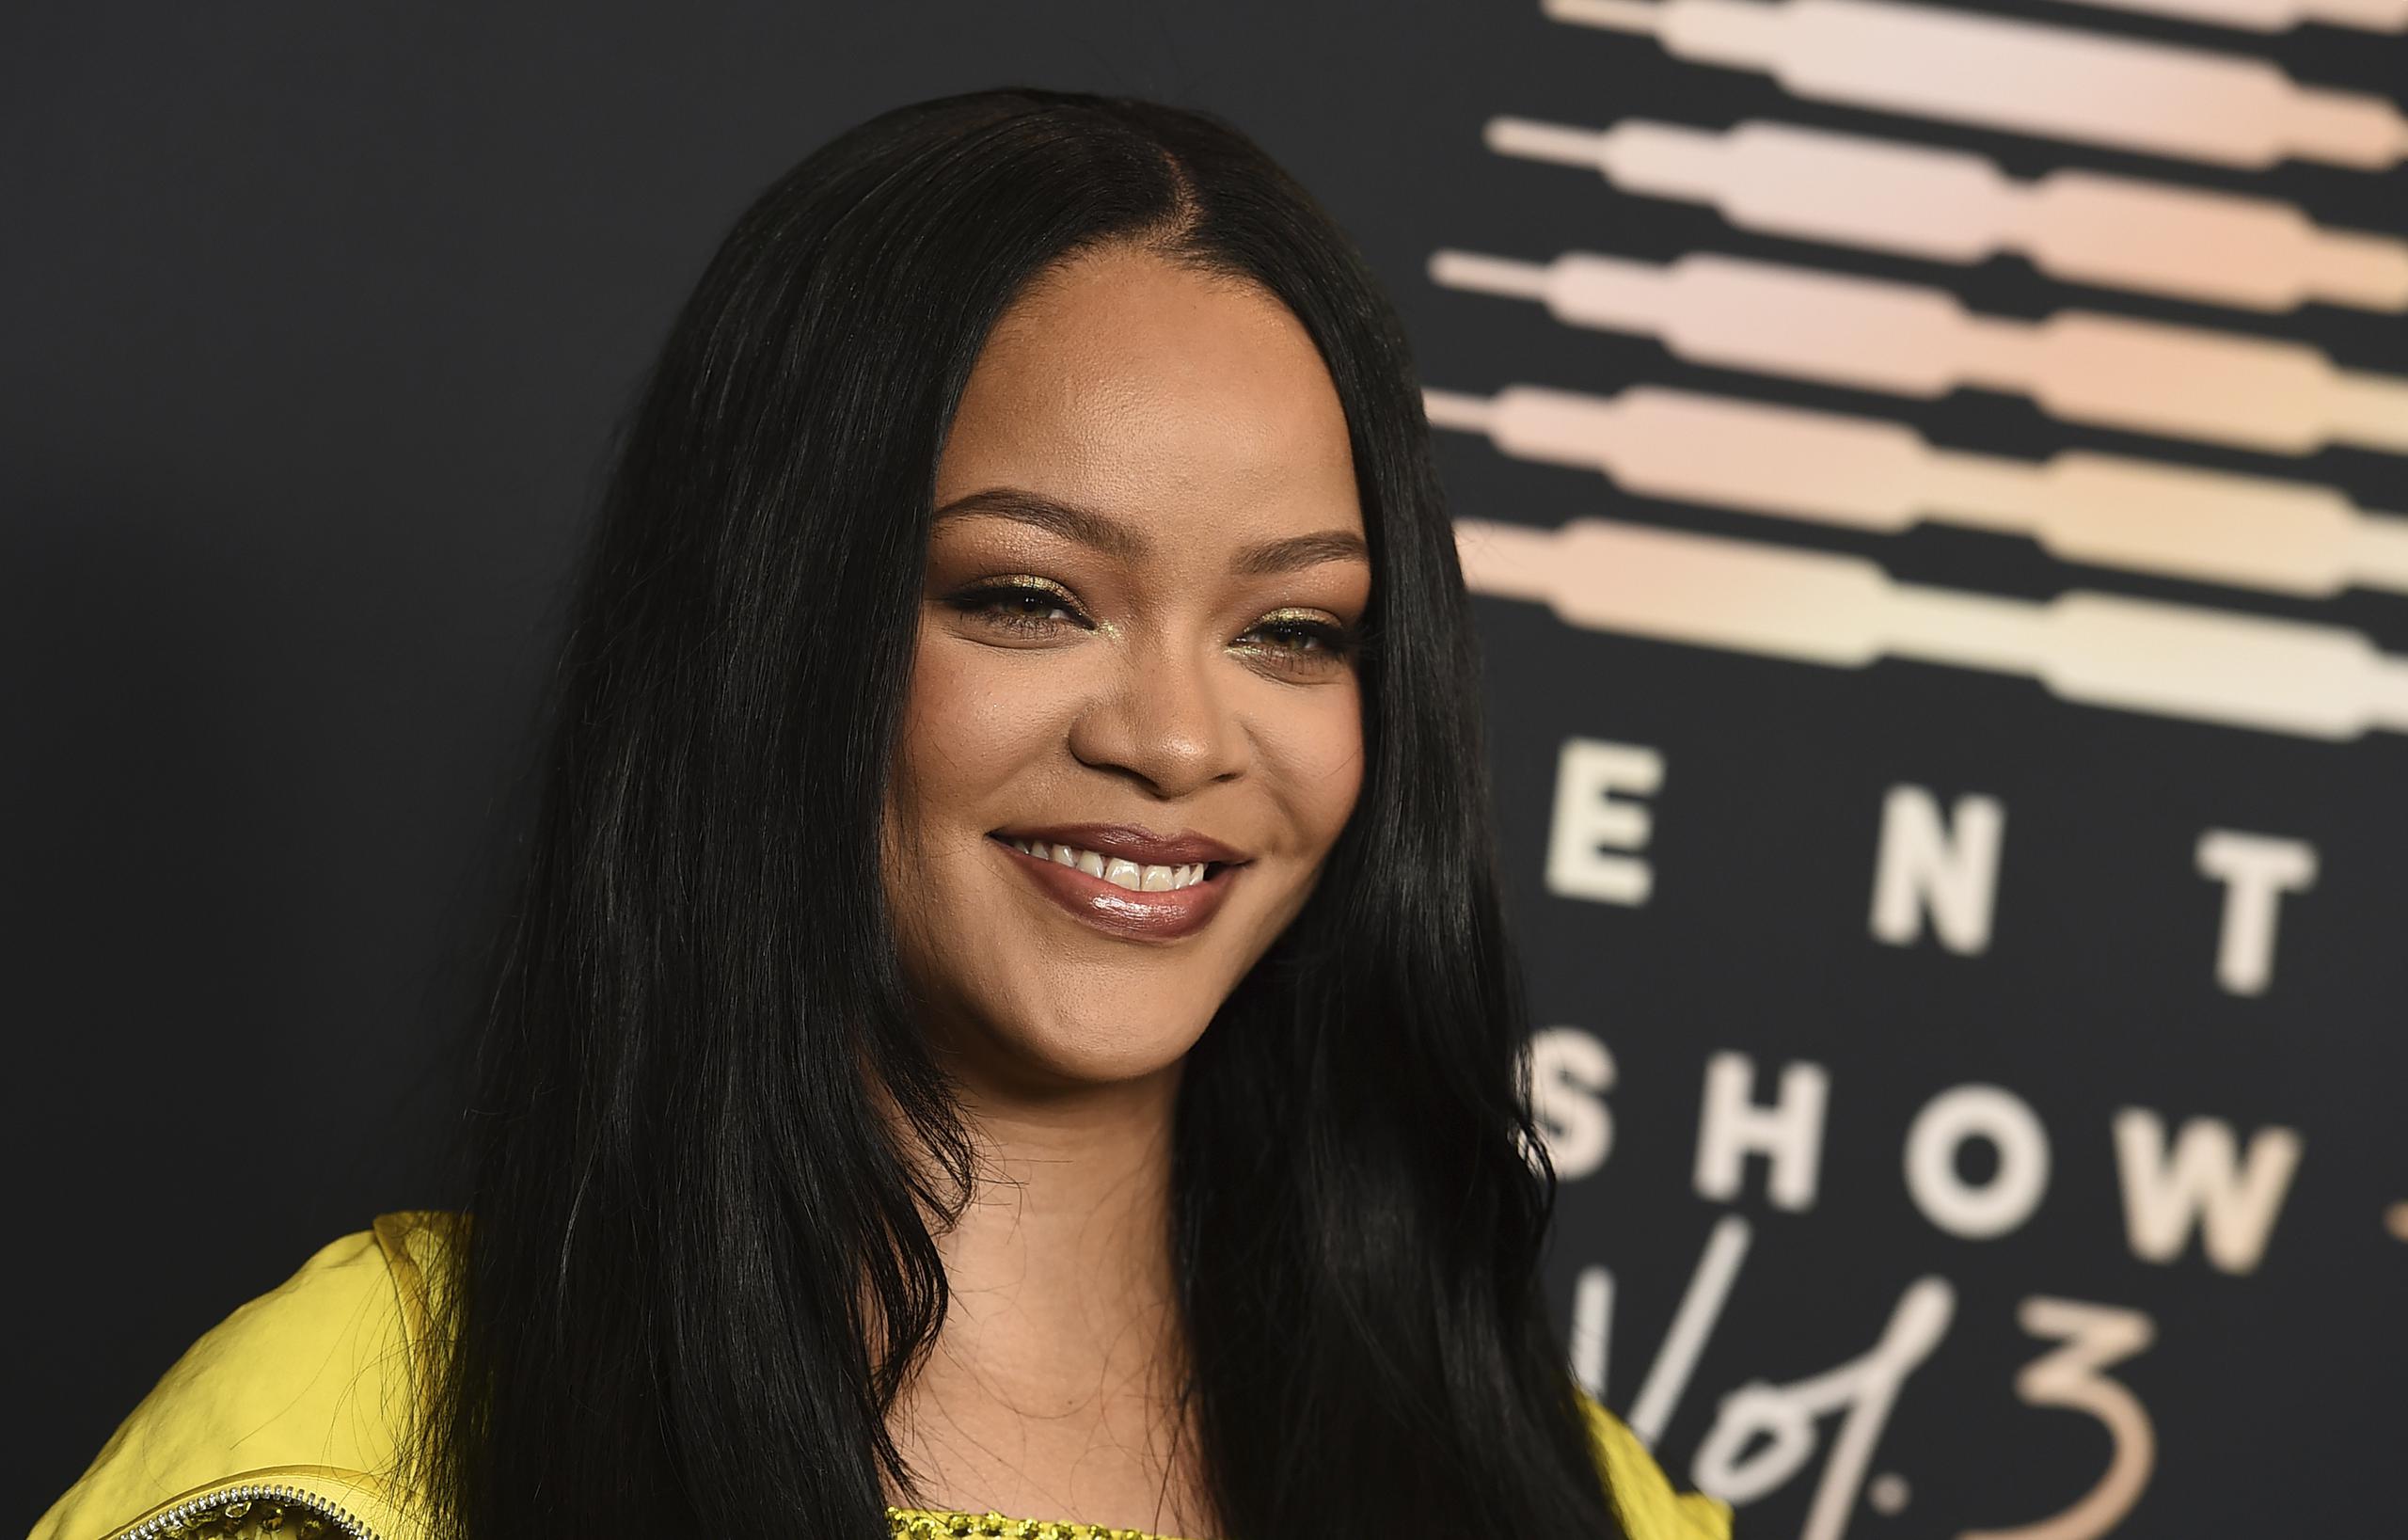 La publicación de Rihanna en TikTok ha recibido más de dos millones de “likes” y un sinnúmero de comentarios de parte de los seguidores, que han quedado impactados con el infante.